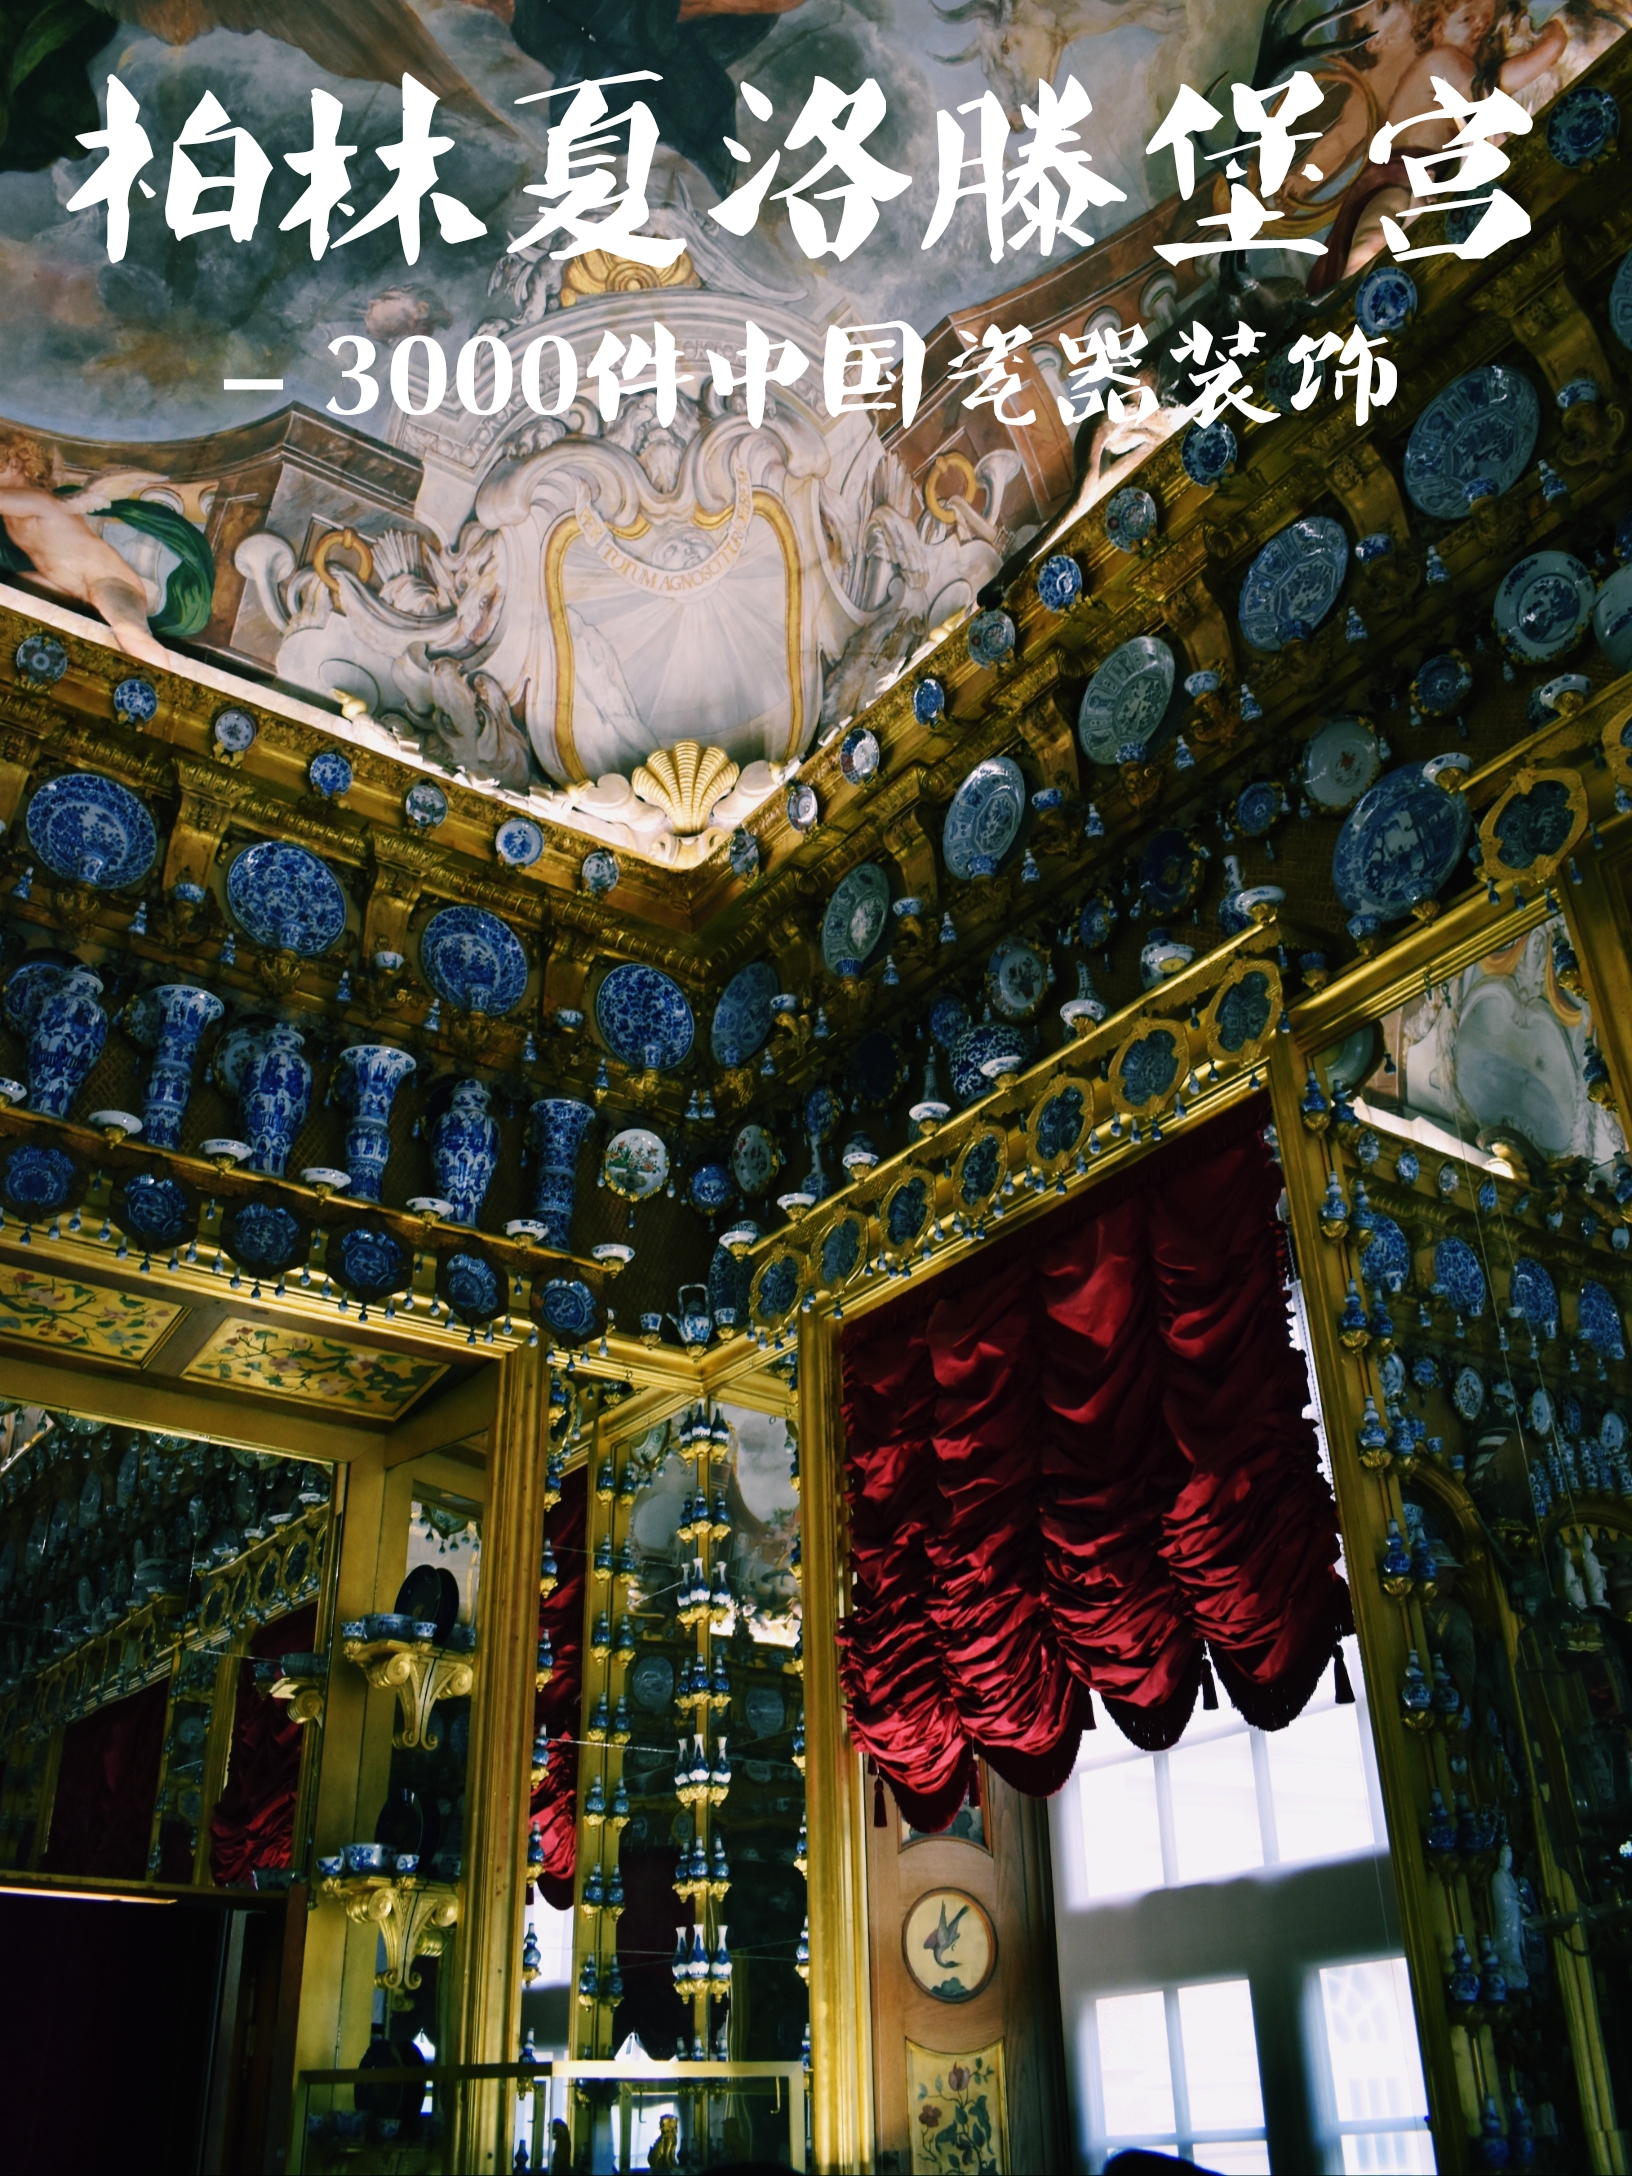 柏林夏洛滕堡宫 - 用3000件中国瓷器装饰